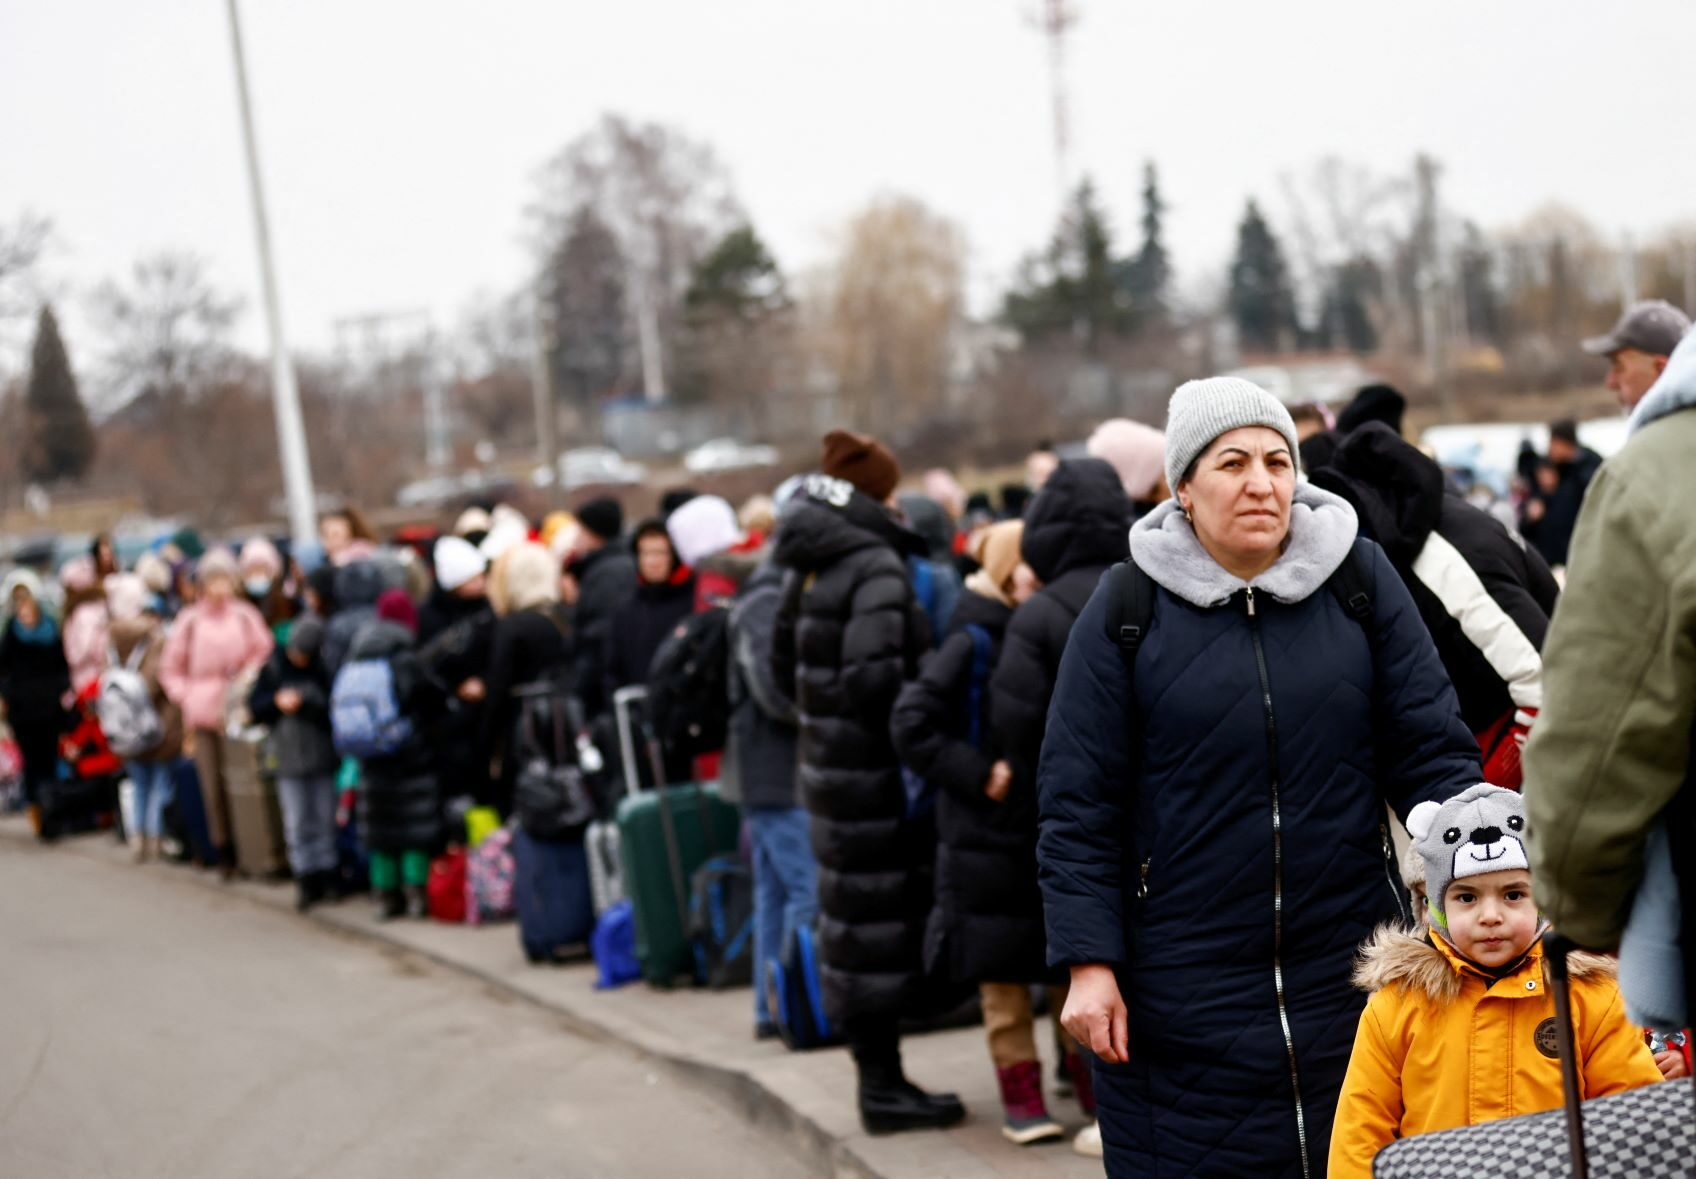 ยูเอ็นเอชซีอาร์ชี้ ยูเครนแห่อพยพหนีภัยสู้รบแล้วกว่า 1.2 ล้านคน กว่าครึ่งซบโปแลนด์